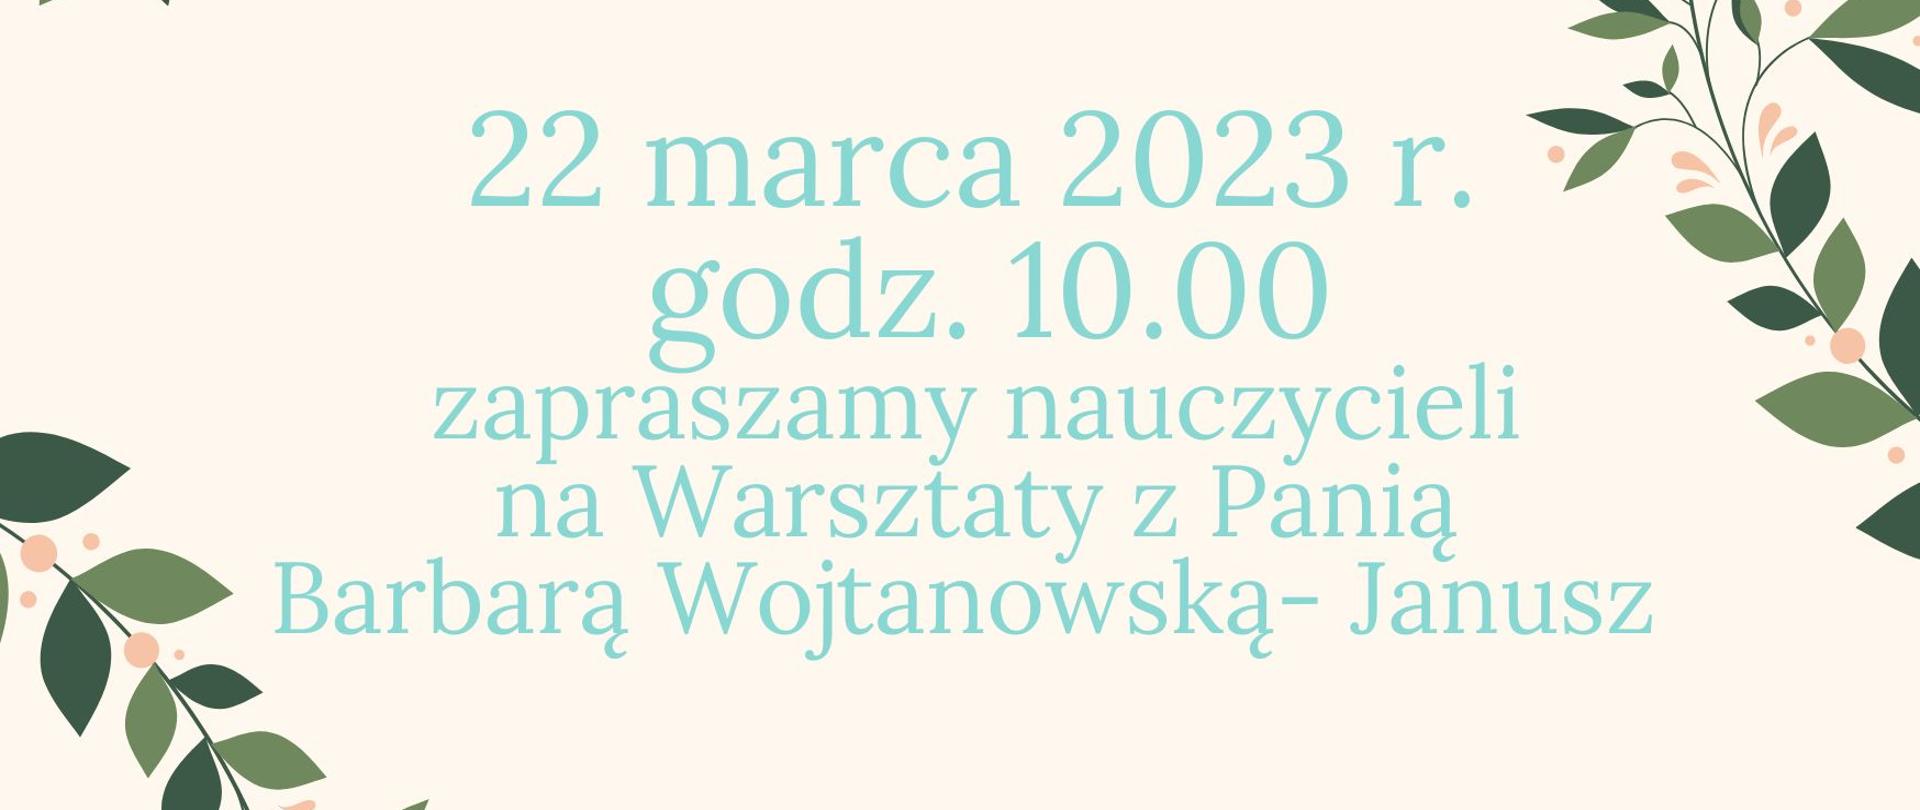 Plakat z wydarzeniem- na kremowym tle znajduje się informacja dotycząca warsztatów dla nauczycieli, które poprowadzi pani Barbara Wojtanowska - Janusz w dniu 22.03.2023 r. o godz. 10.00 - Po bokach umieszczone są zielone gałązki.